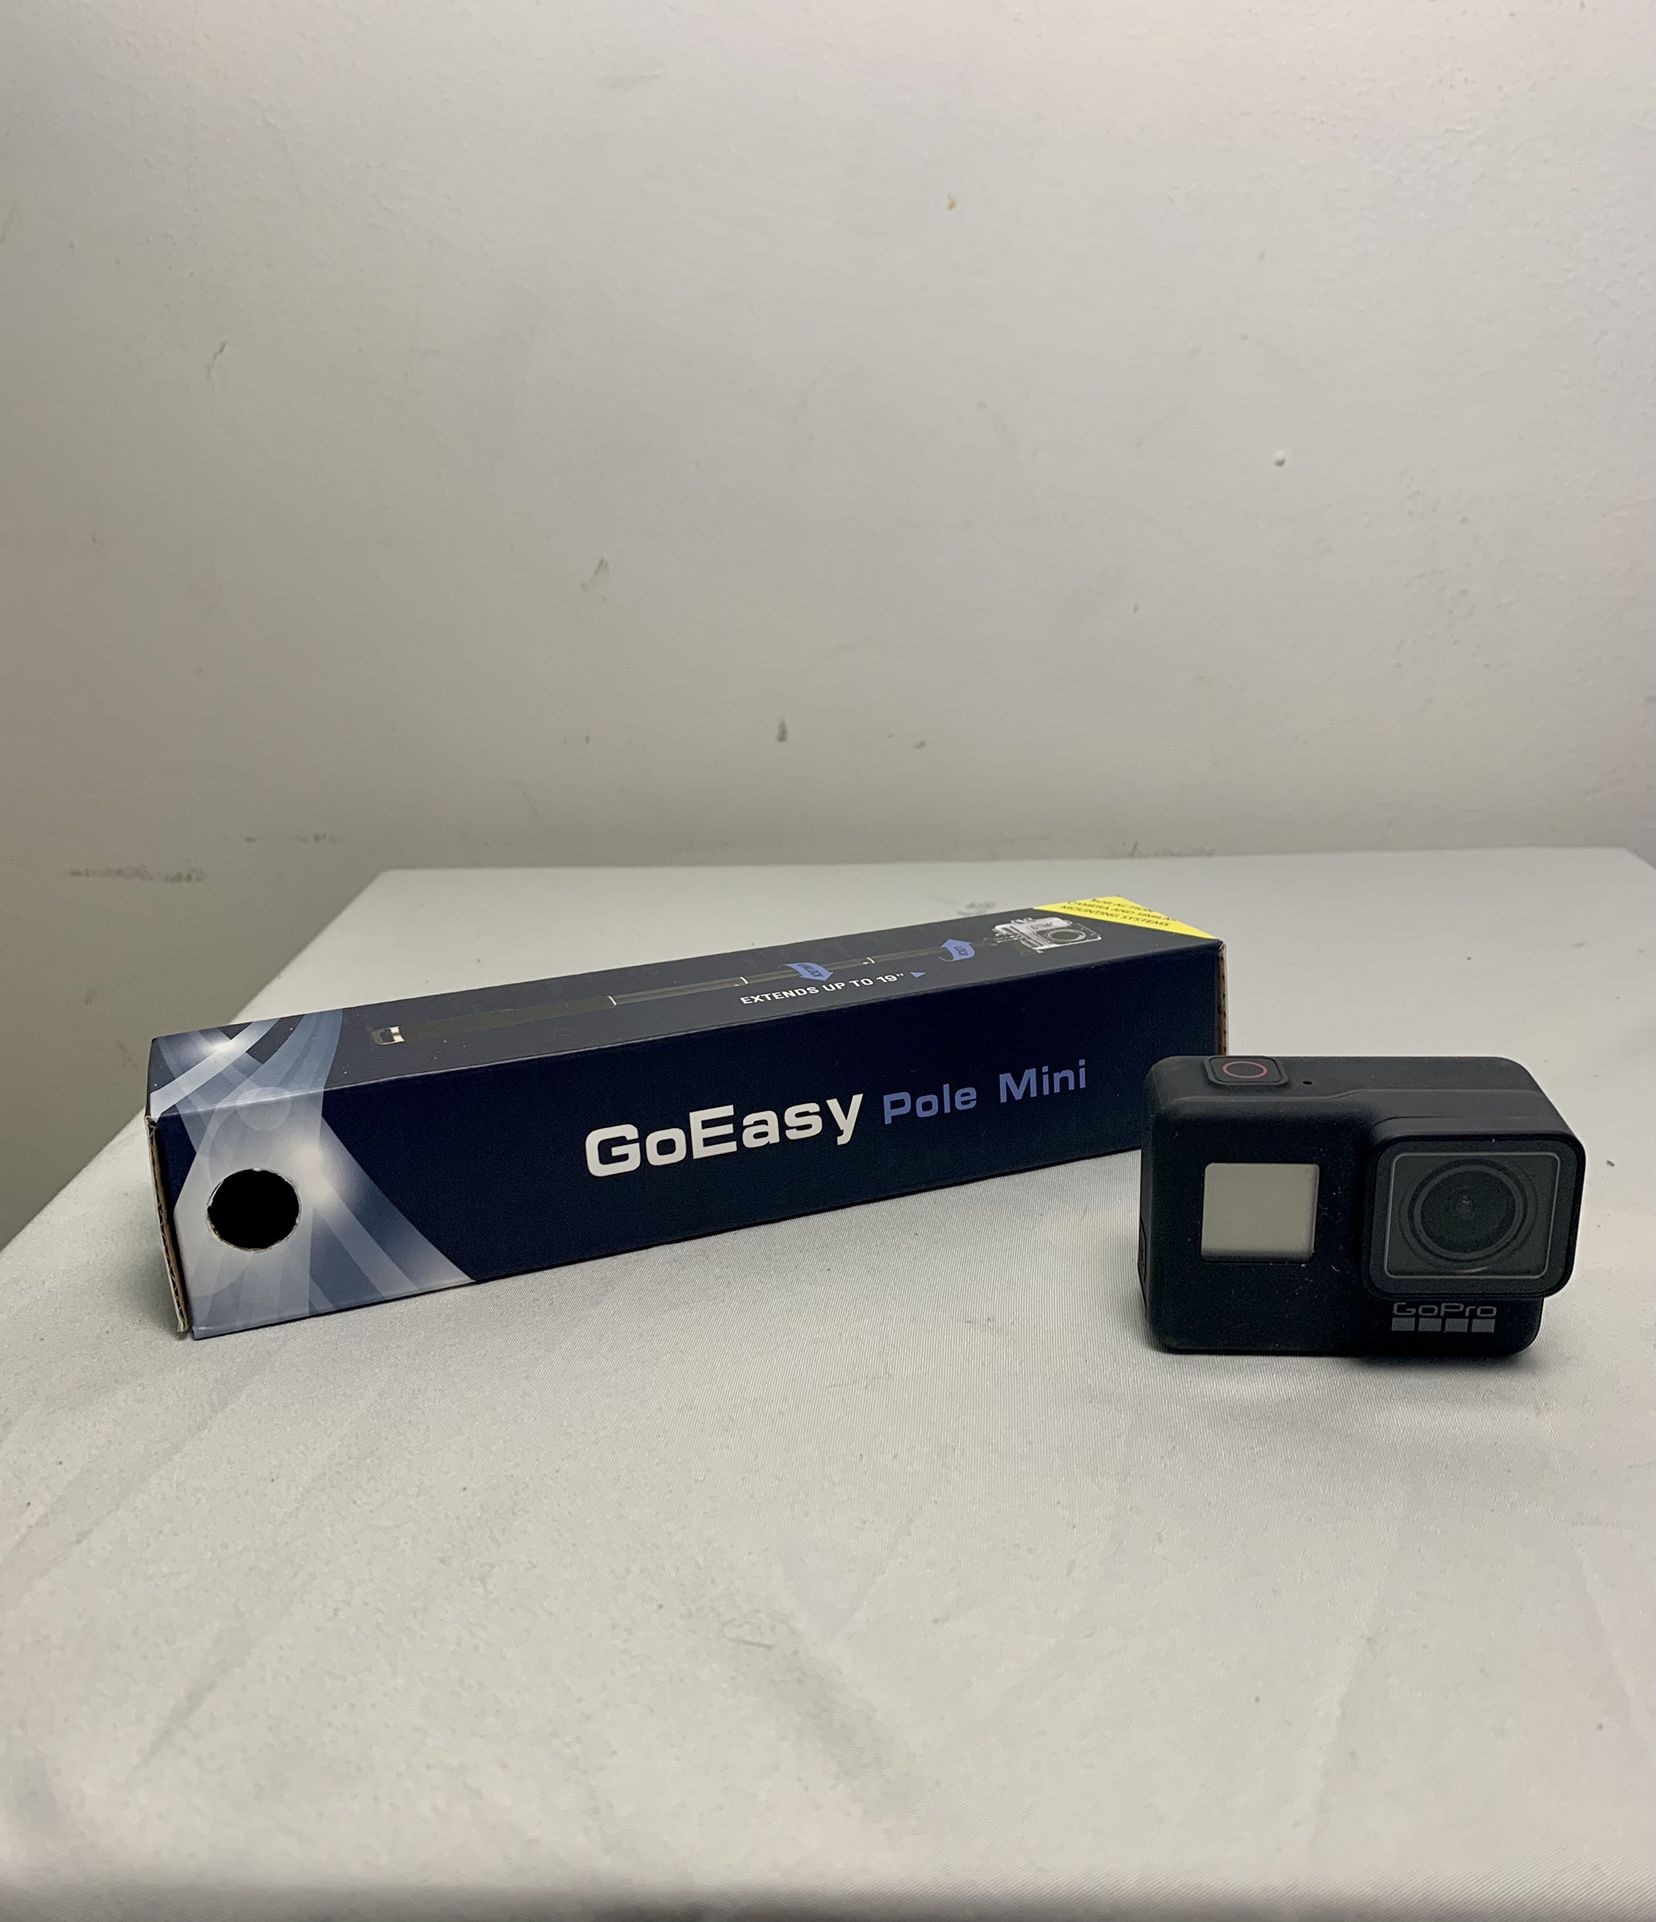 GoPro Hero7 + Free GoEasy Pole Mini Selfie Stick (PRICE NEGOTIABLE) 